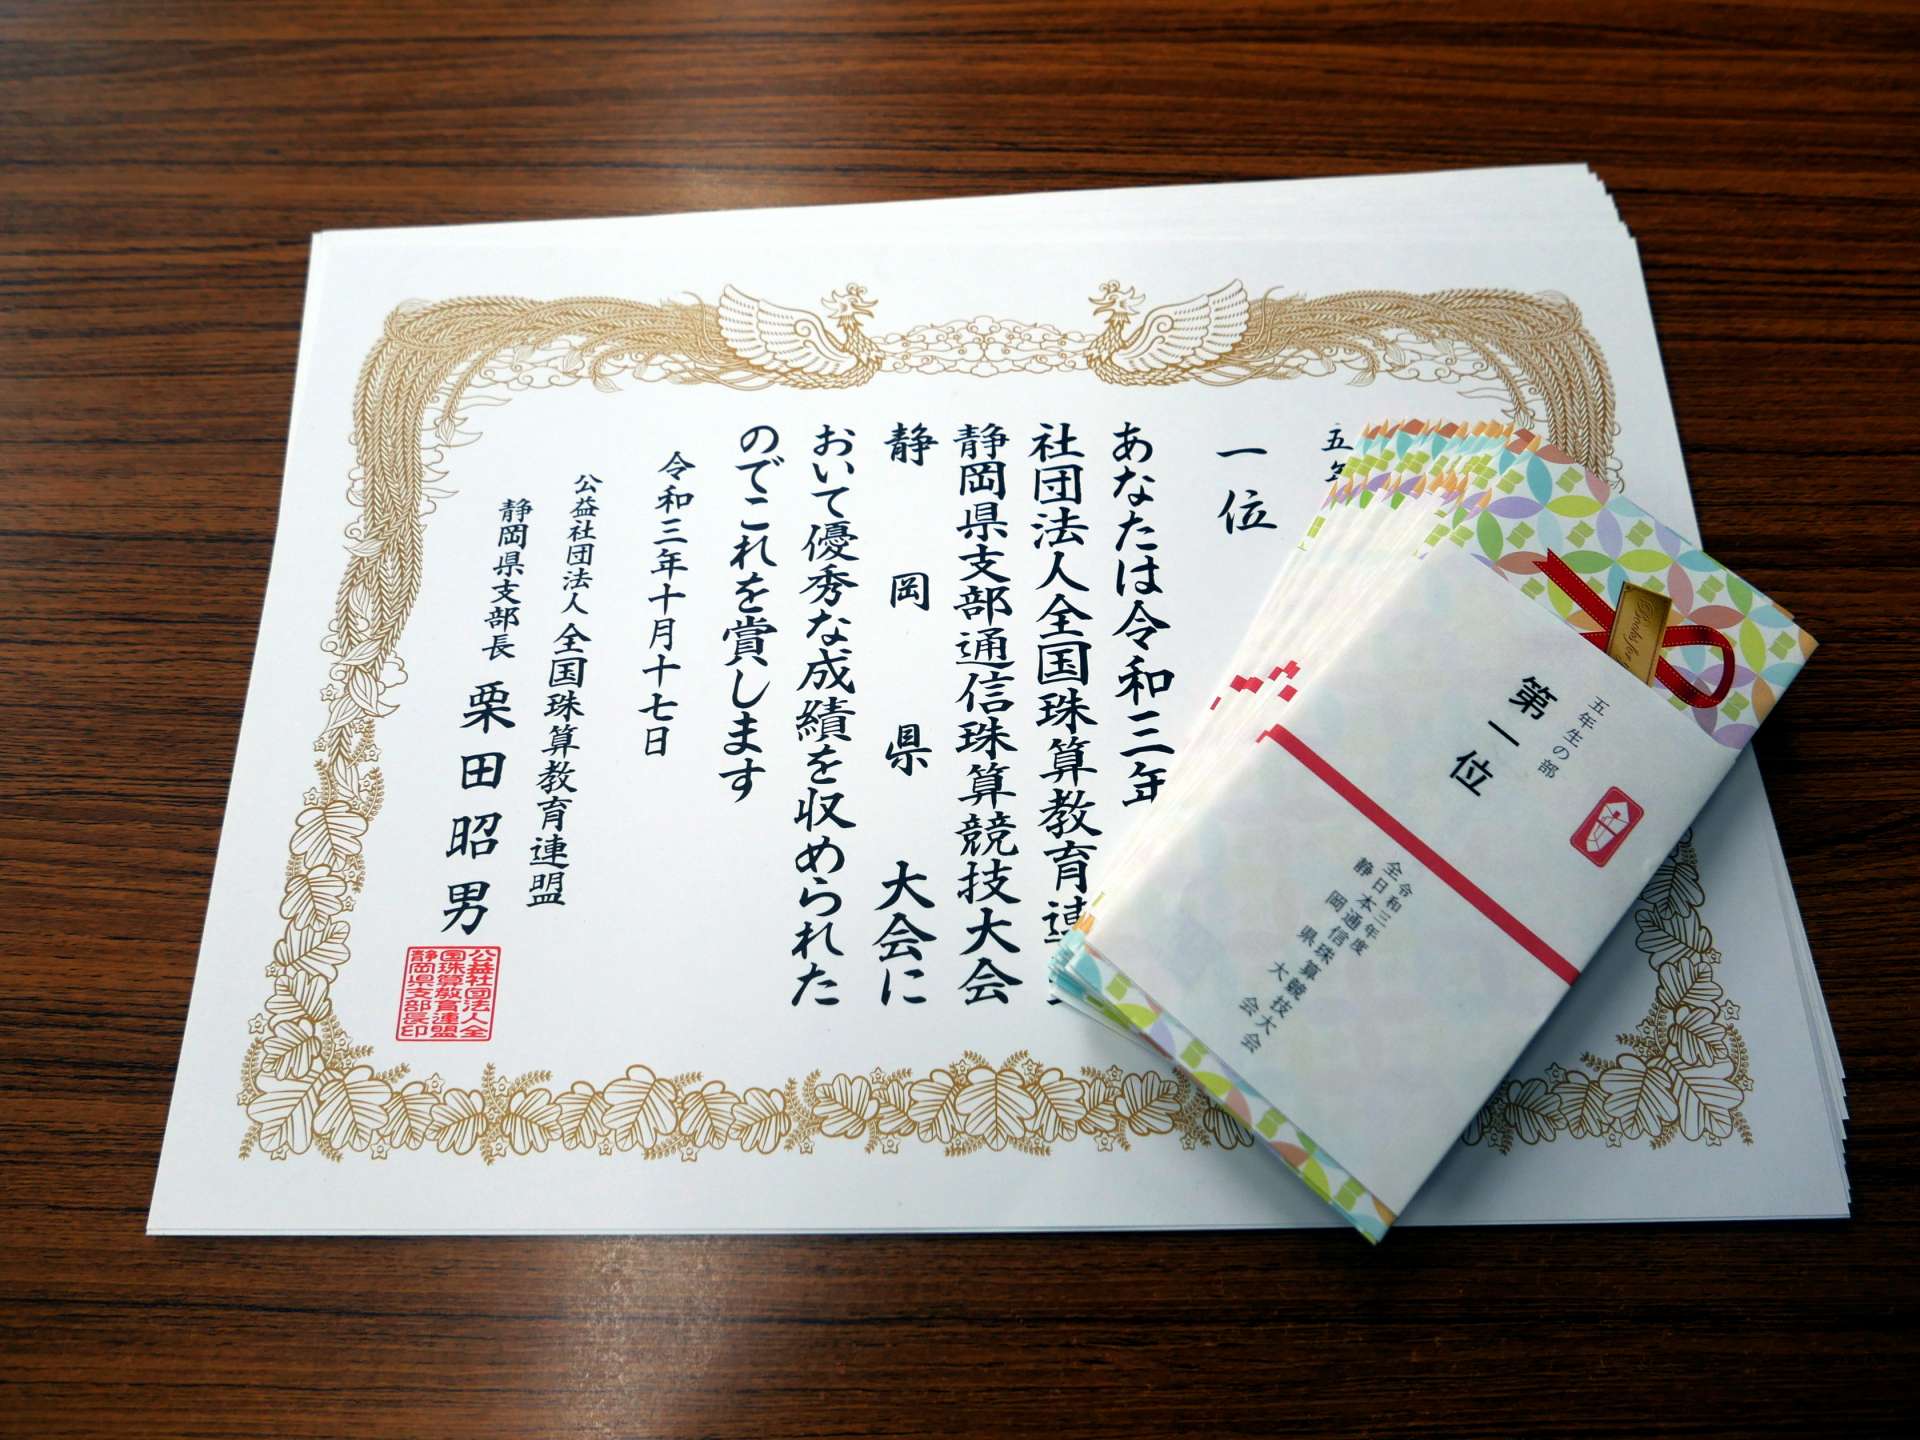 令和３年度・全珠連通信競技大会（静岡県大会）の結果 | たかなし珠算教室